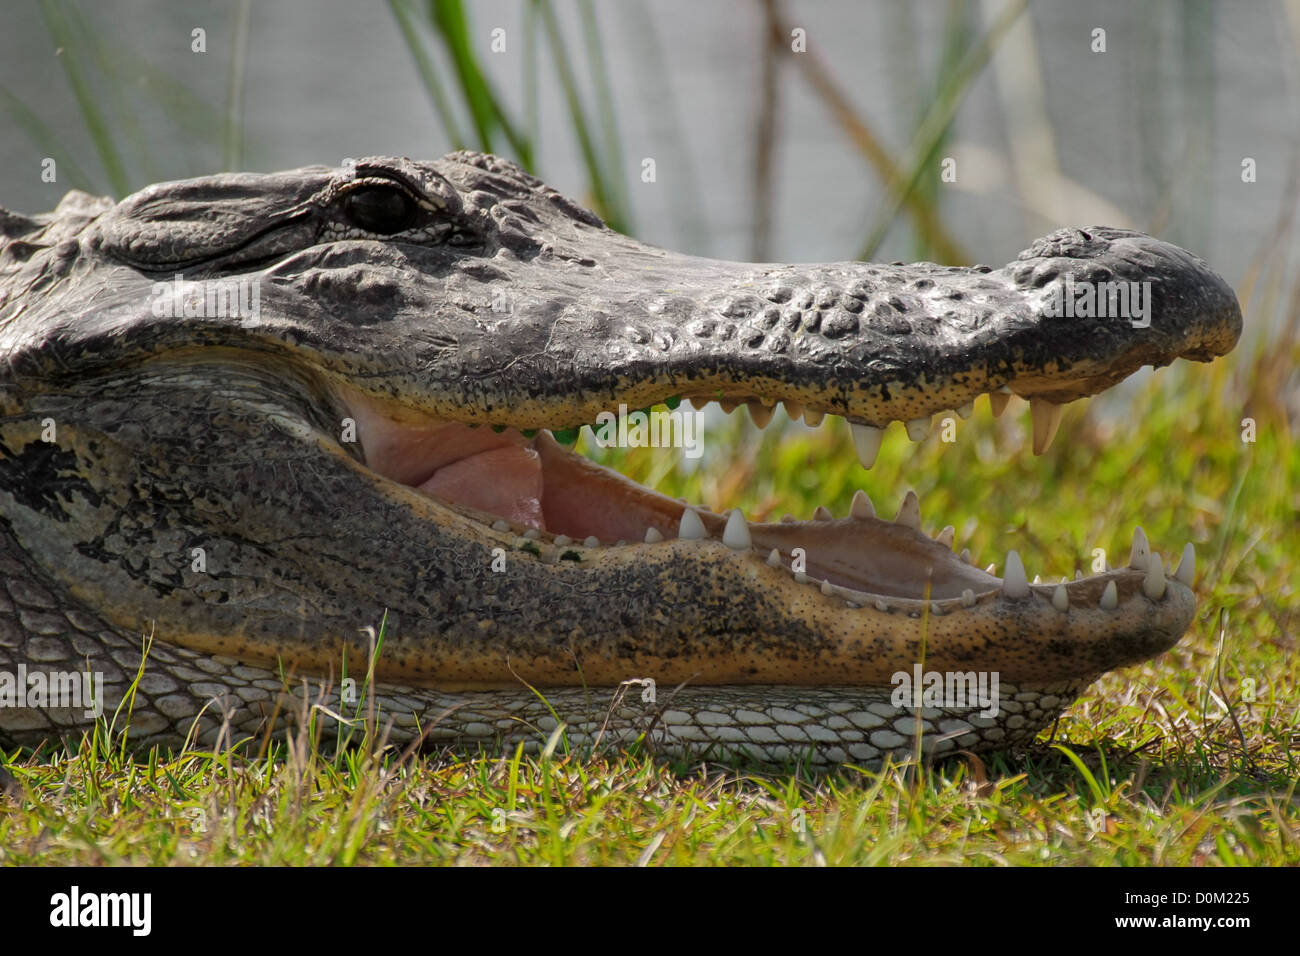 Ein Alligator mit seinen Mund Agape. Klaffende, kann ein allgemeines Verhalten für Krokodile, eine Kühlfunktion vorsehen. Stockfoto